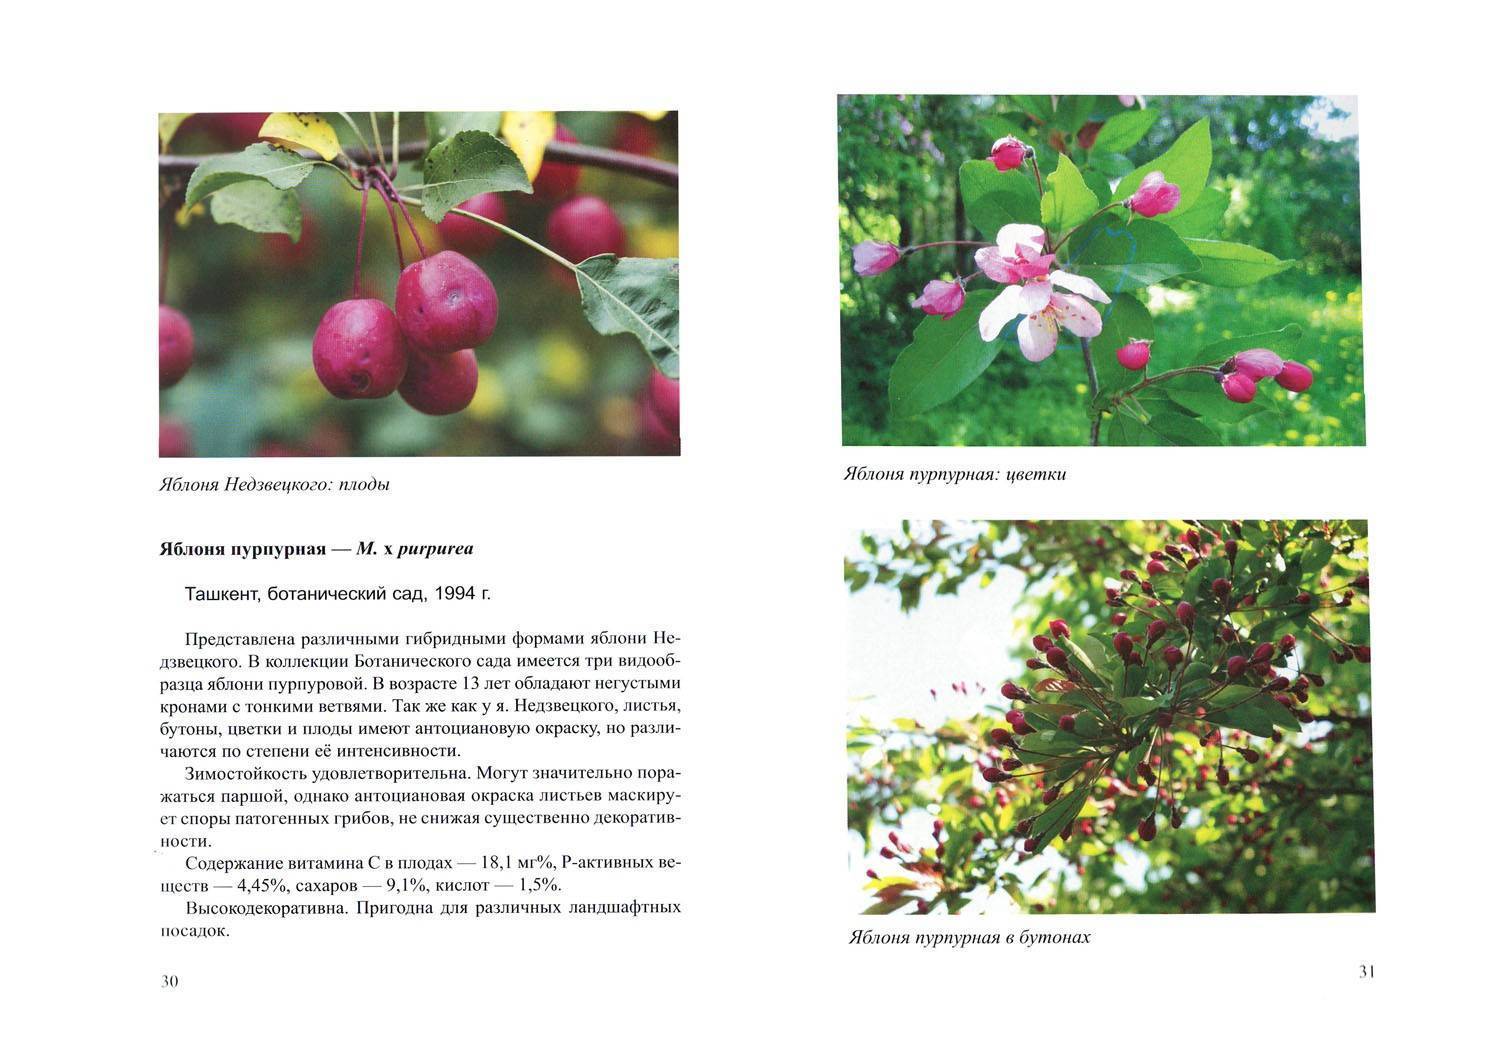 Декоративная яблоня недзвецкого: описание, фото, отзывы